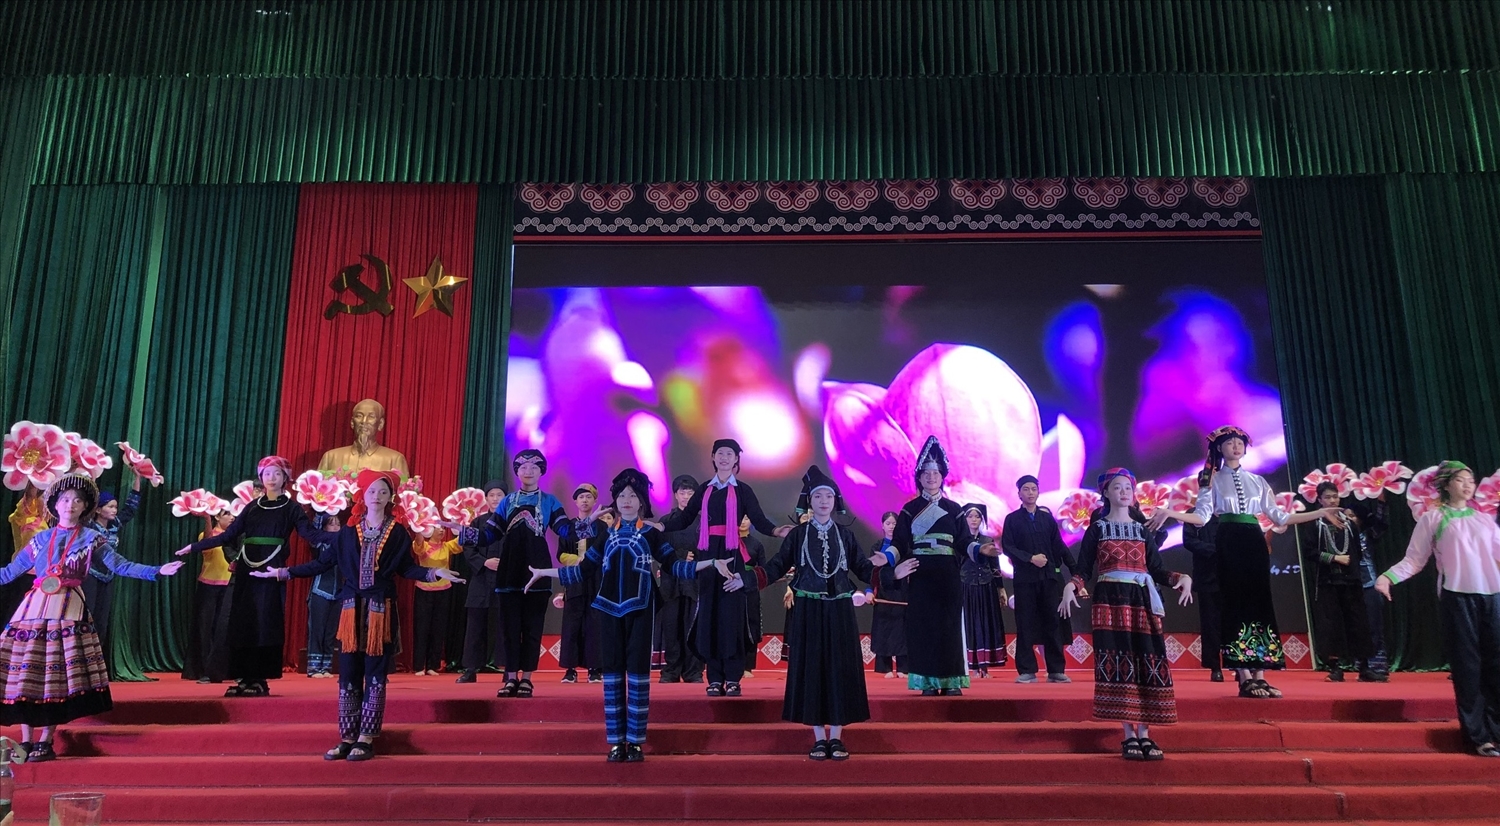 Việc tổ chức “Tuần lễ trang phục truyền thống các dân tộc” thể hiện quyết tâm bảo tồn, phát huy trang phục truyền thống dân tộc của tỉnh Lào Cai